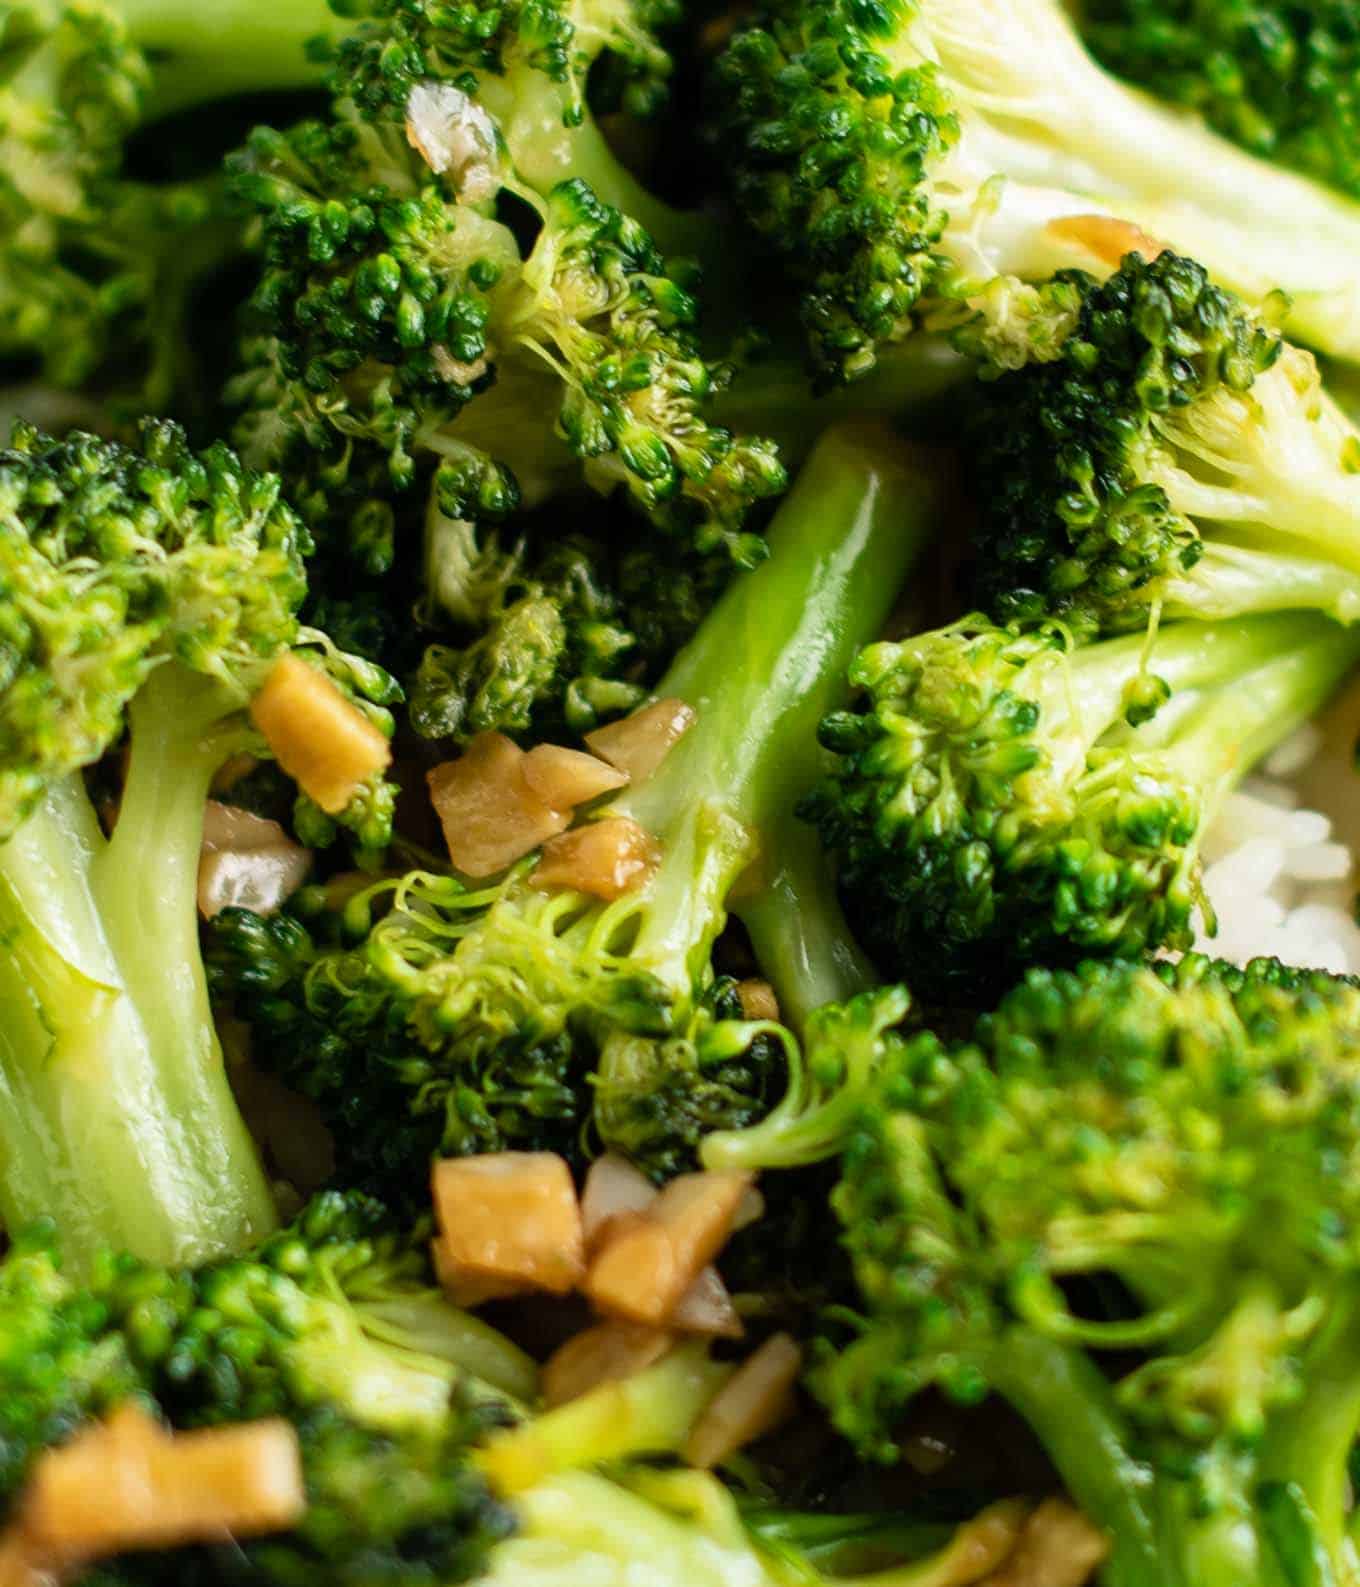 stir fried broccoli